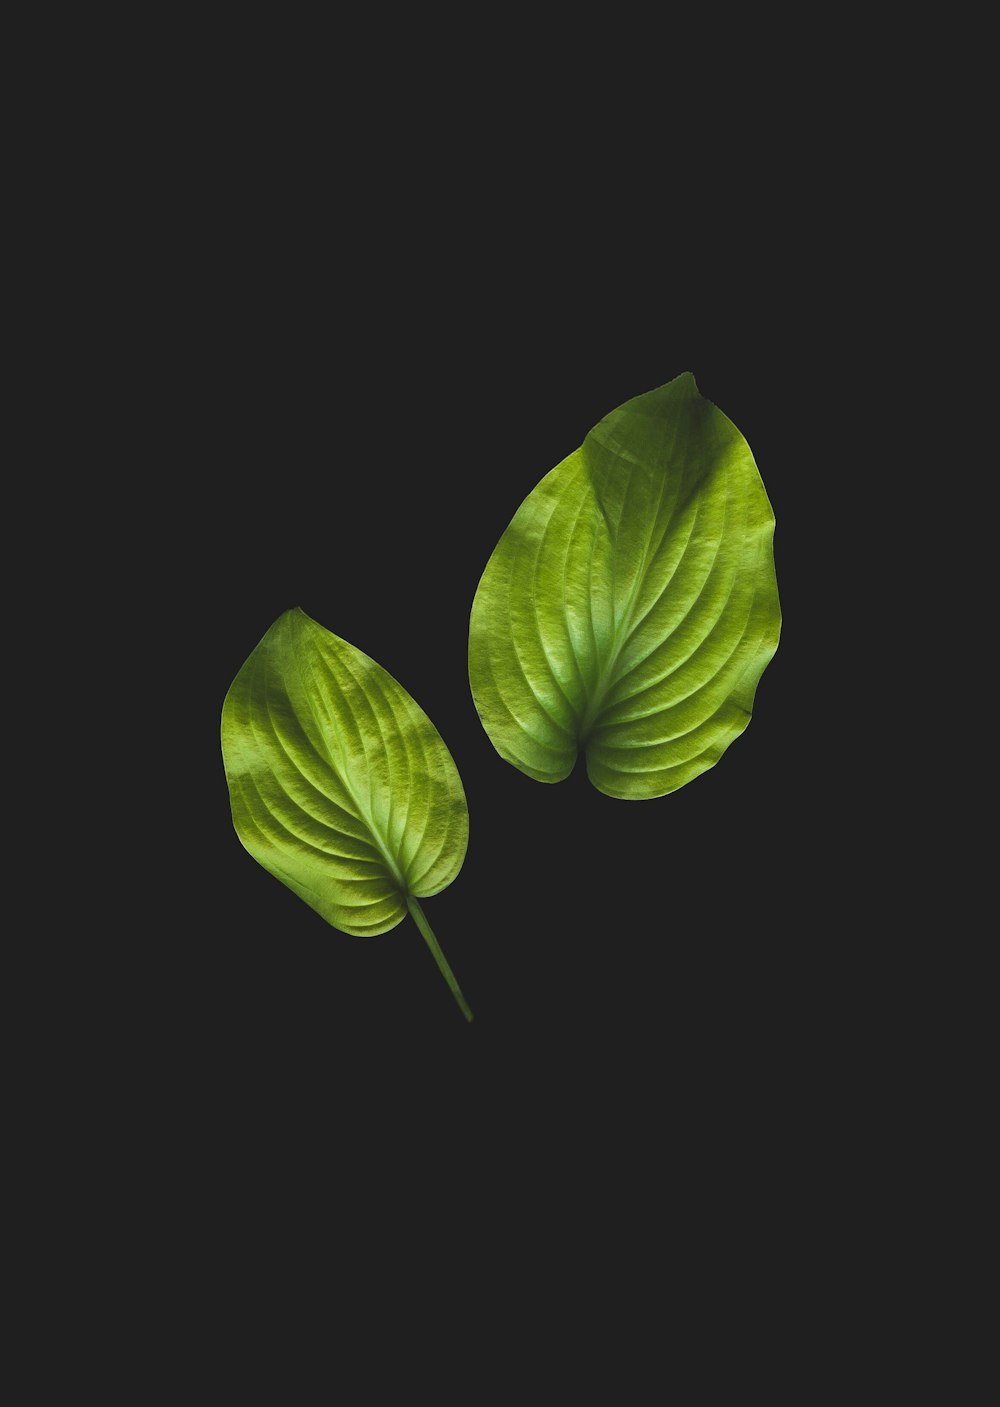 두 개의 녹색 잎